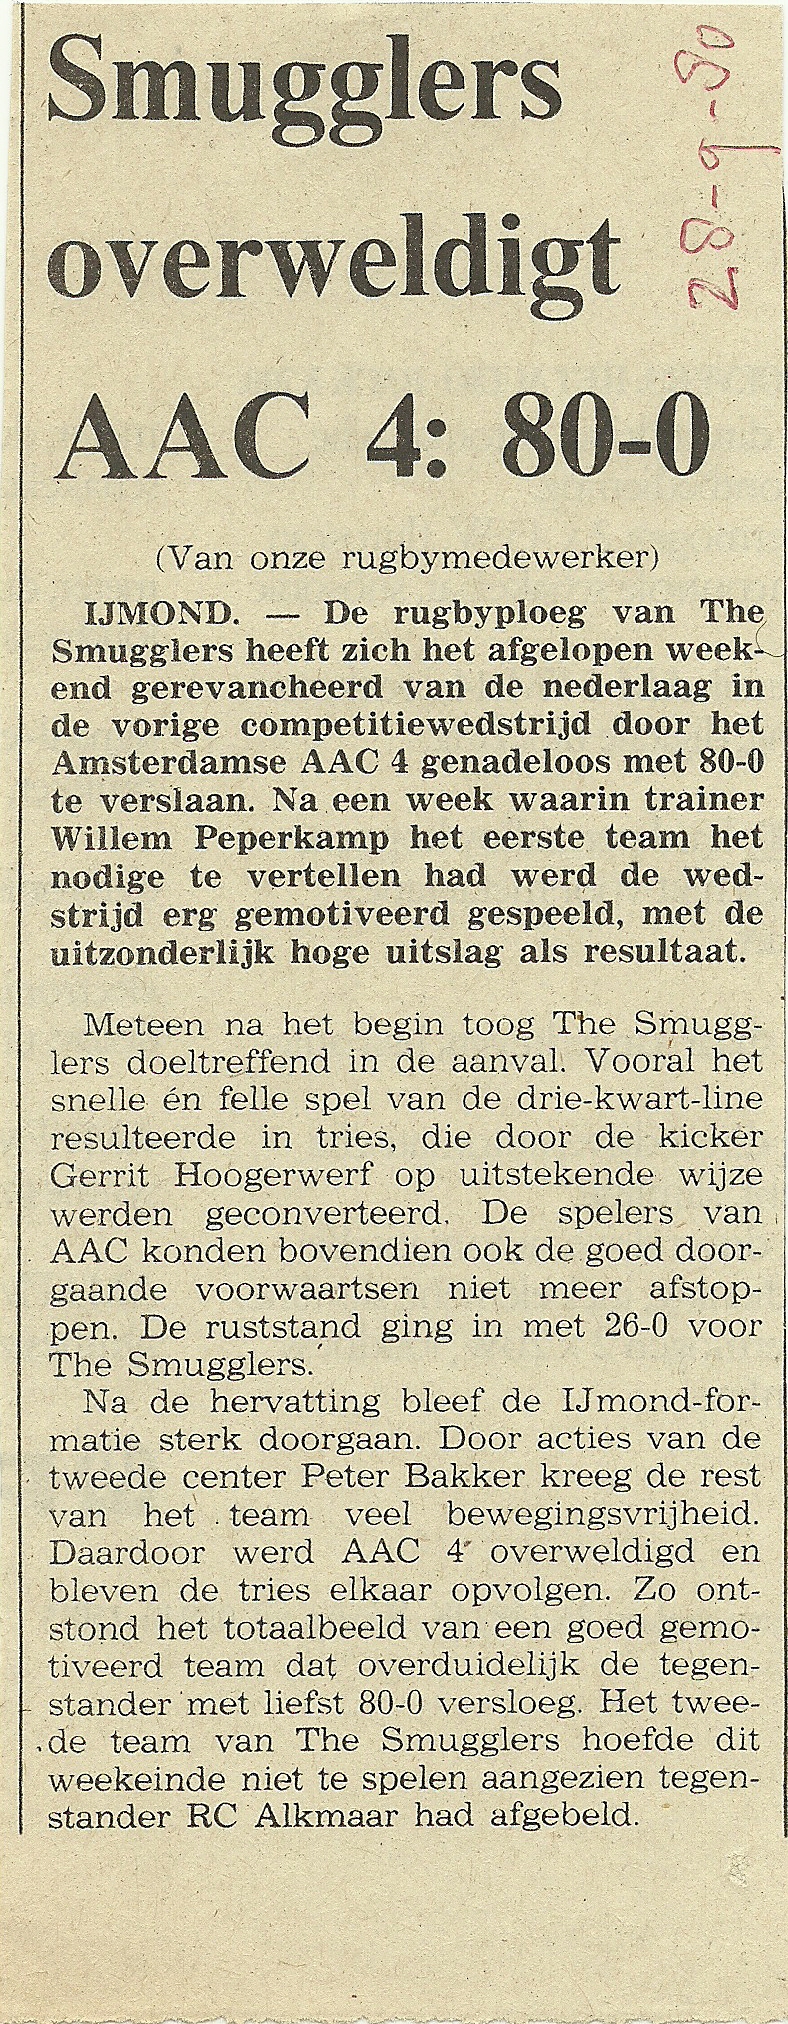 1980-9-28 Smugg-AAC.jpg